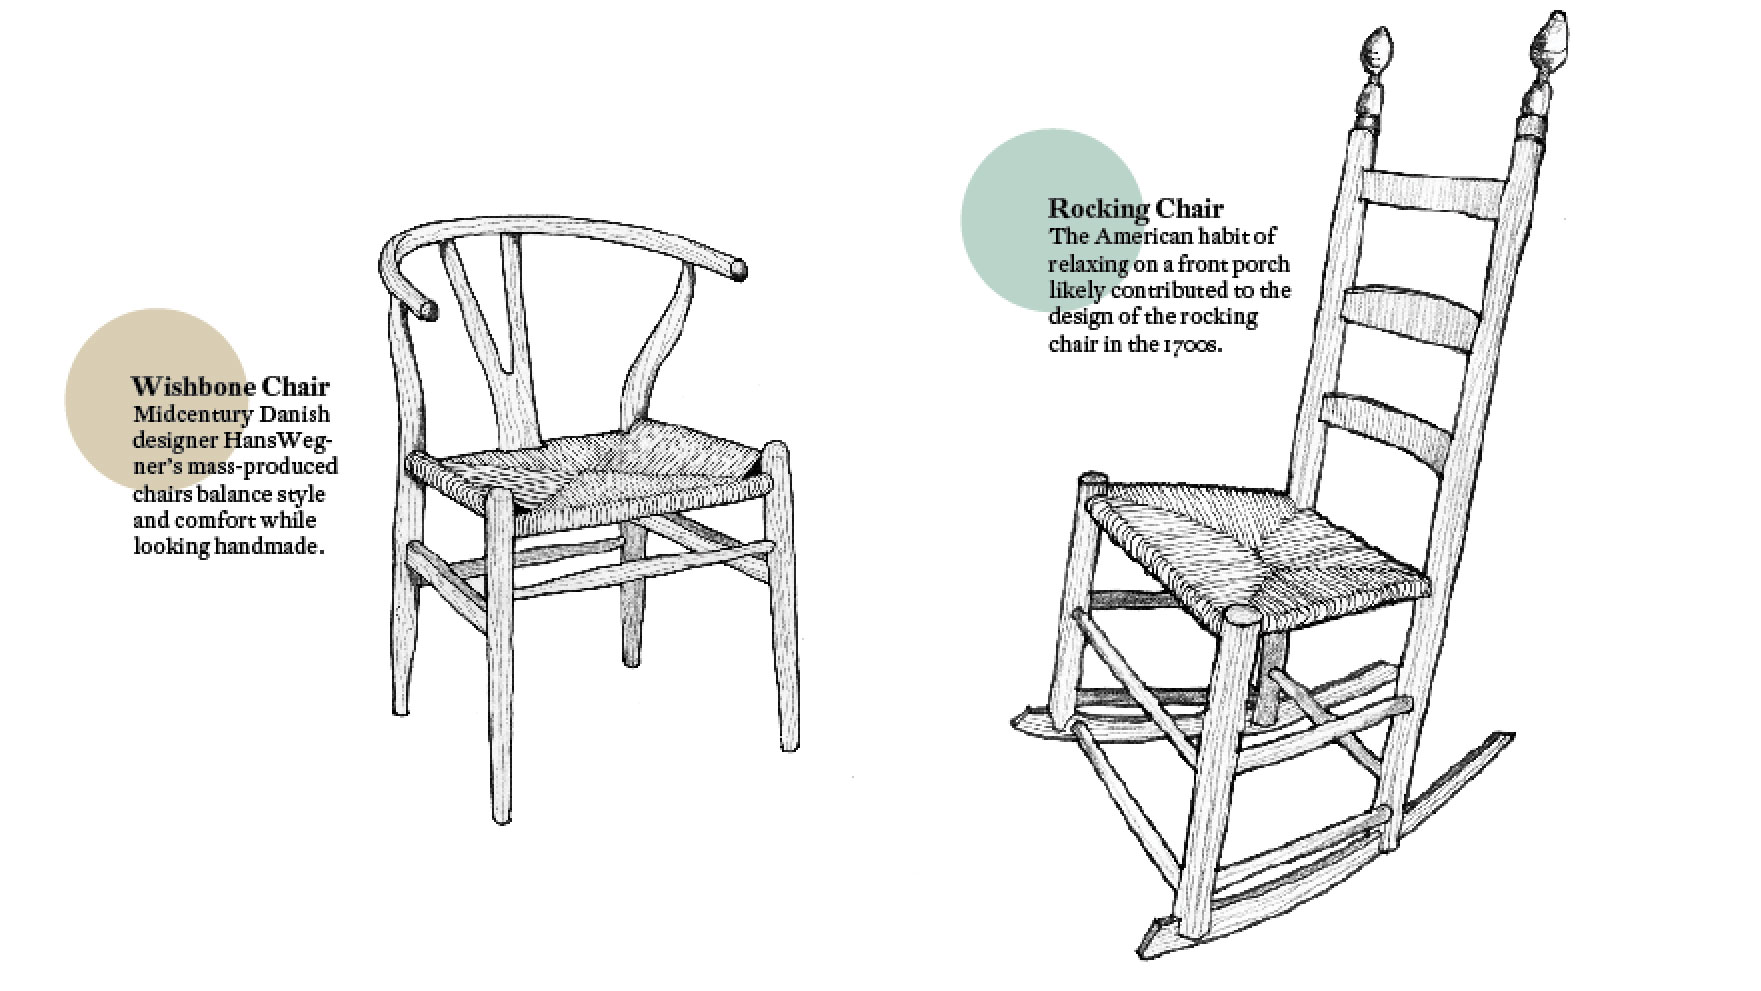 Wishbone and Rocking Chairs